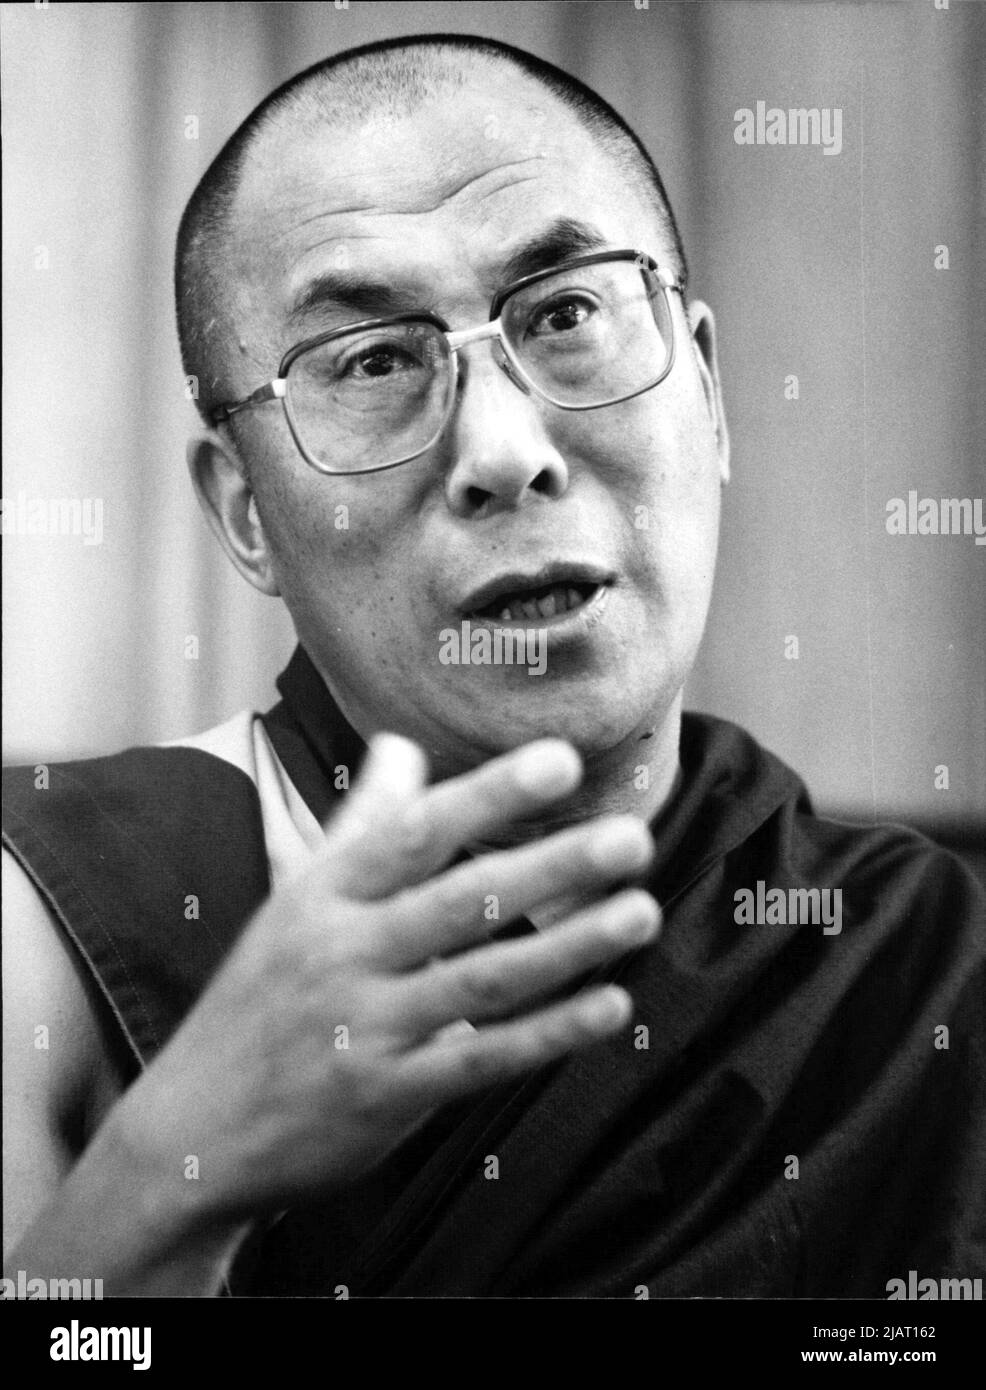 Der XIV. Dalai Lama, im indischen Exil lebender geistlicher und weltlicher Herrscher von Tibet. Ein Foto vom Mai 1986. Stock Photo